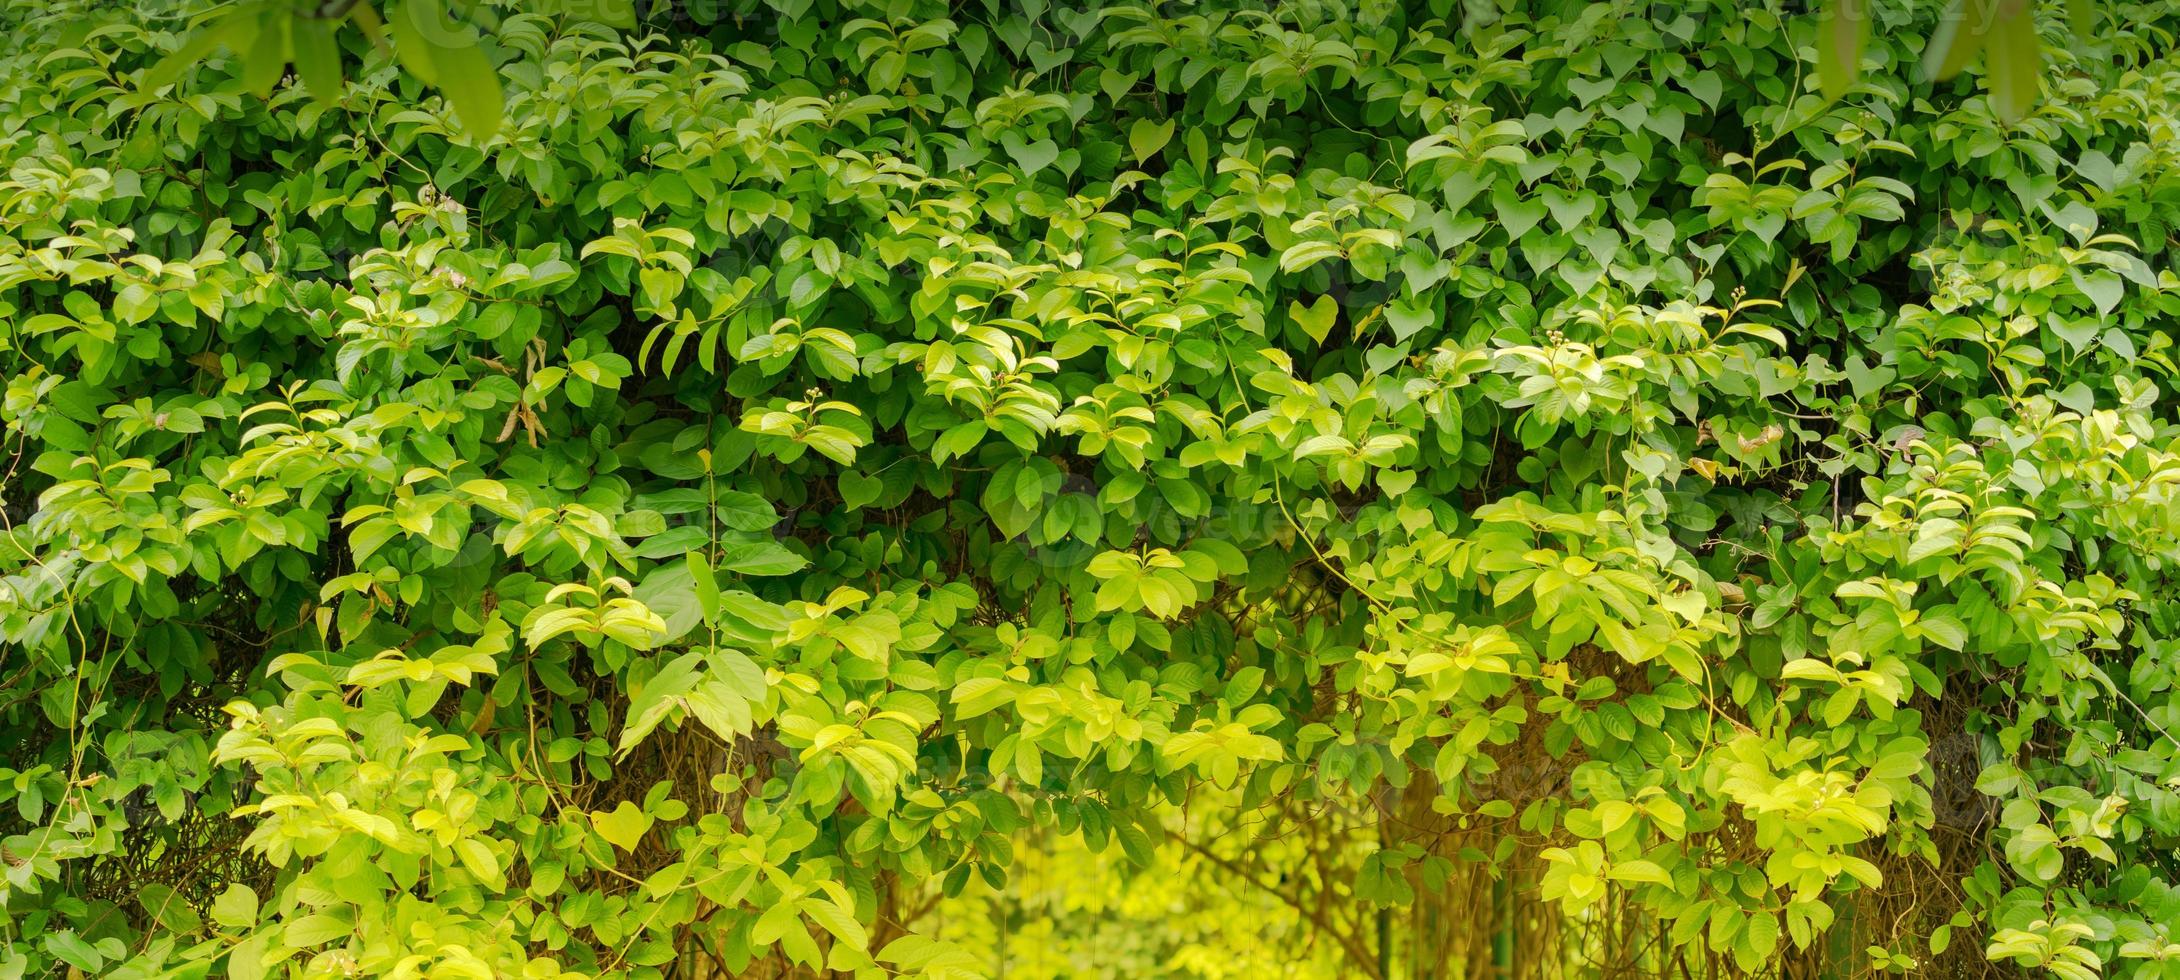 foglia verde naturale, foglie di albero verde fresco sotto la luce del sole foto